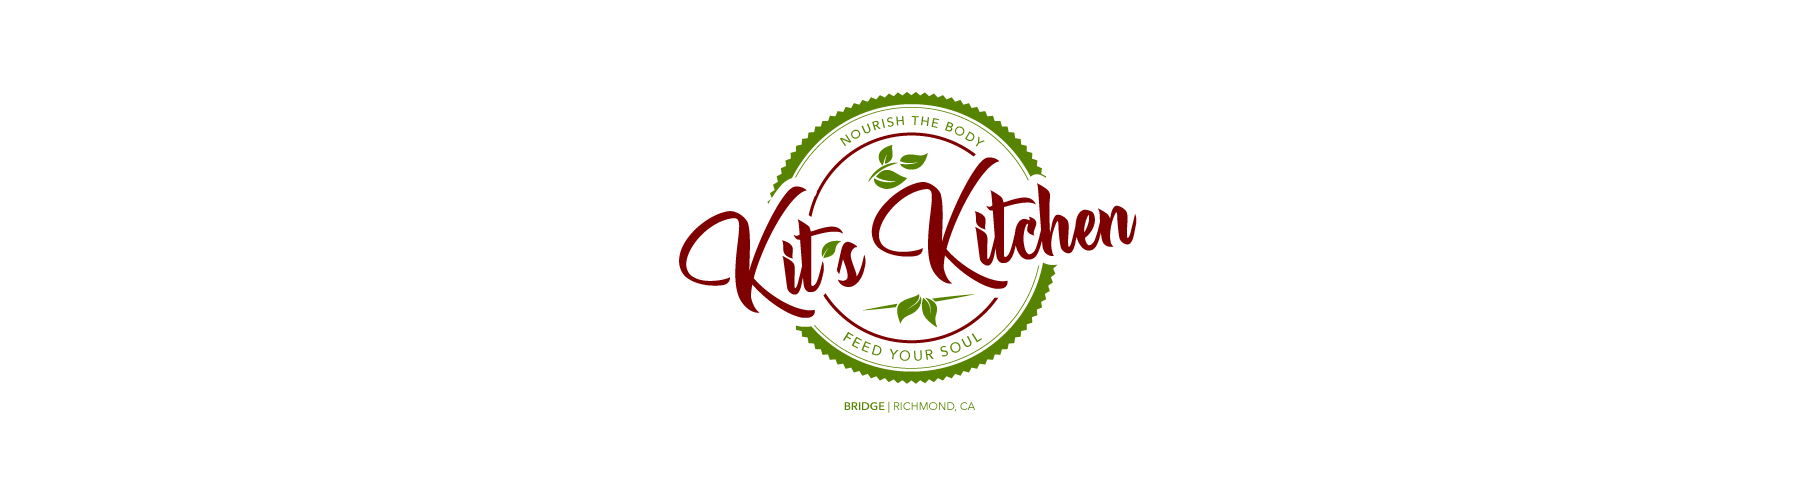 Kits Kitchen